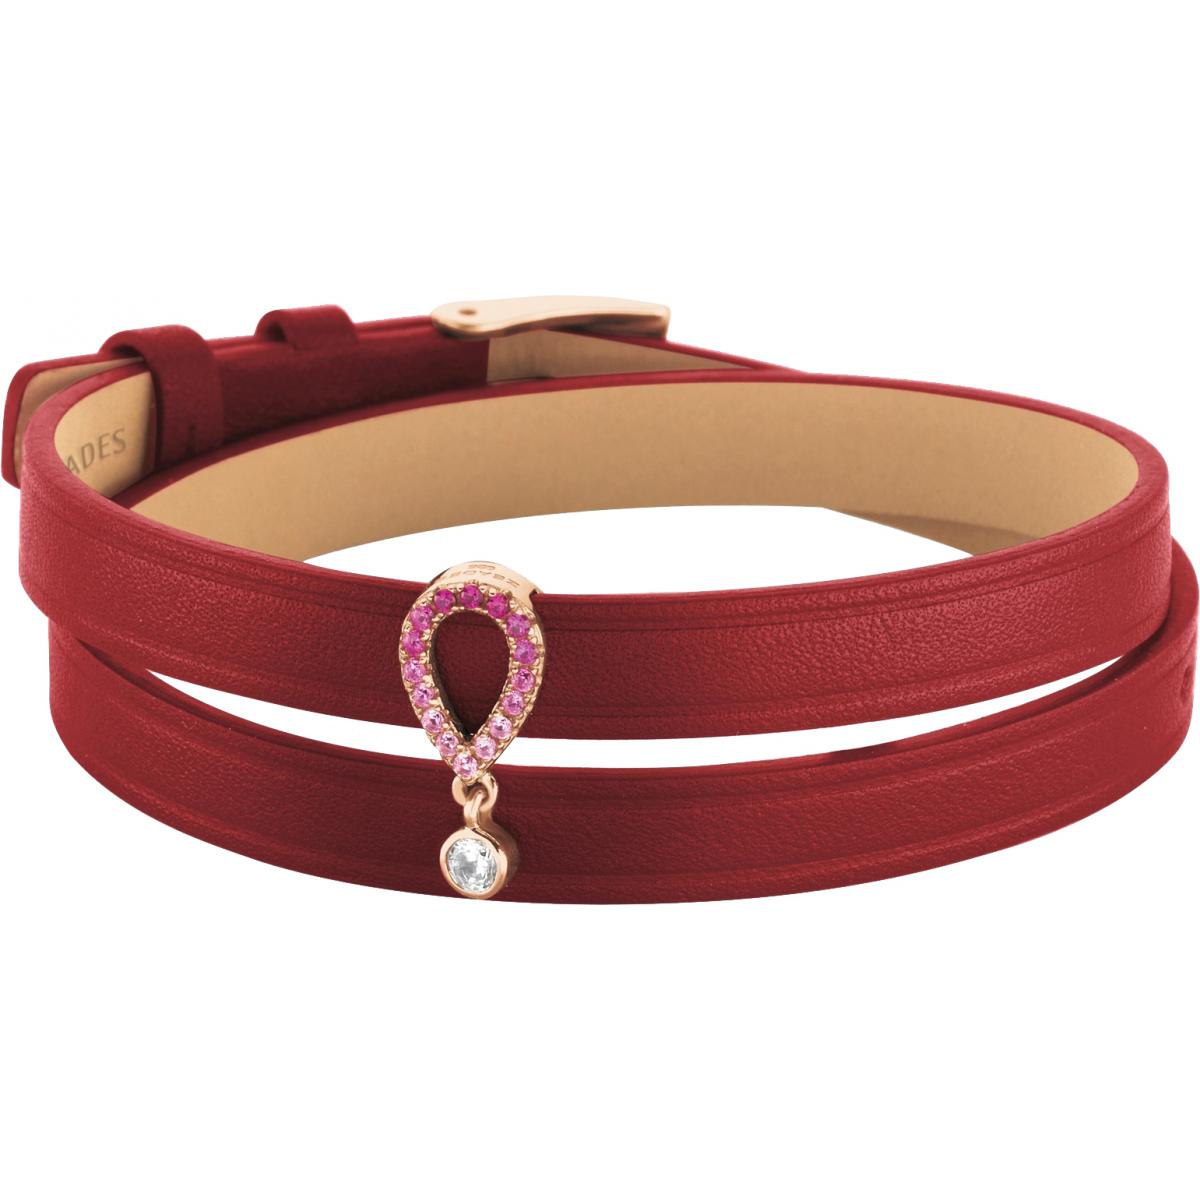 Bracelet Zeades Sbc01098 - Bracelet Or Rose Cuir Femme